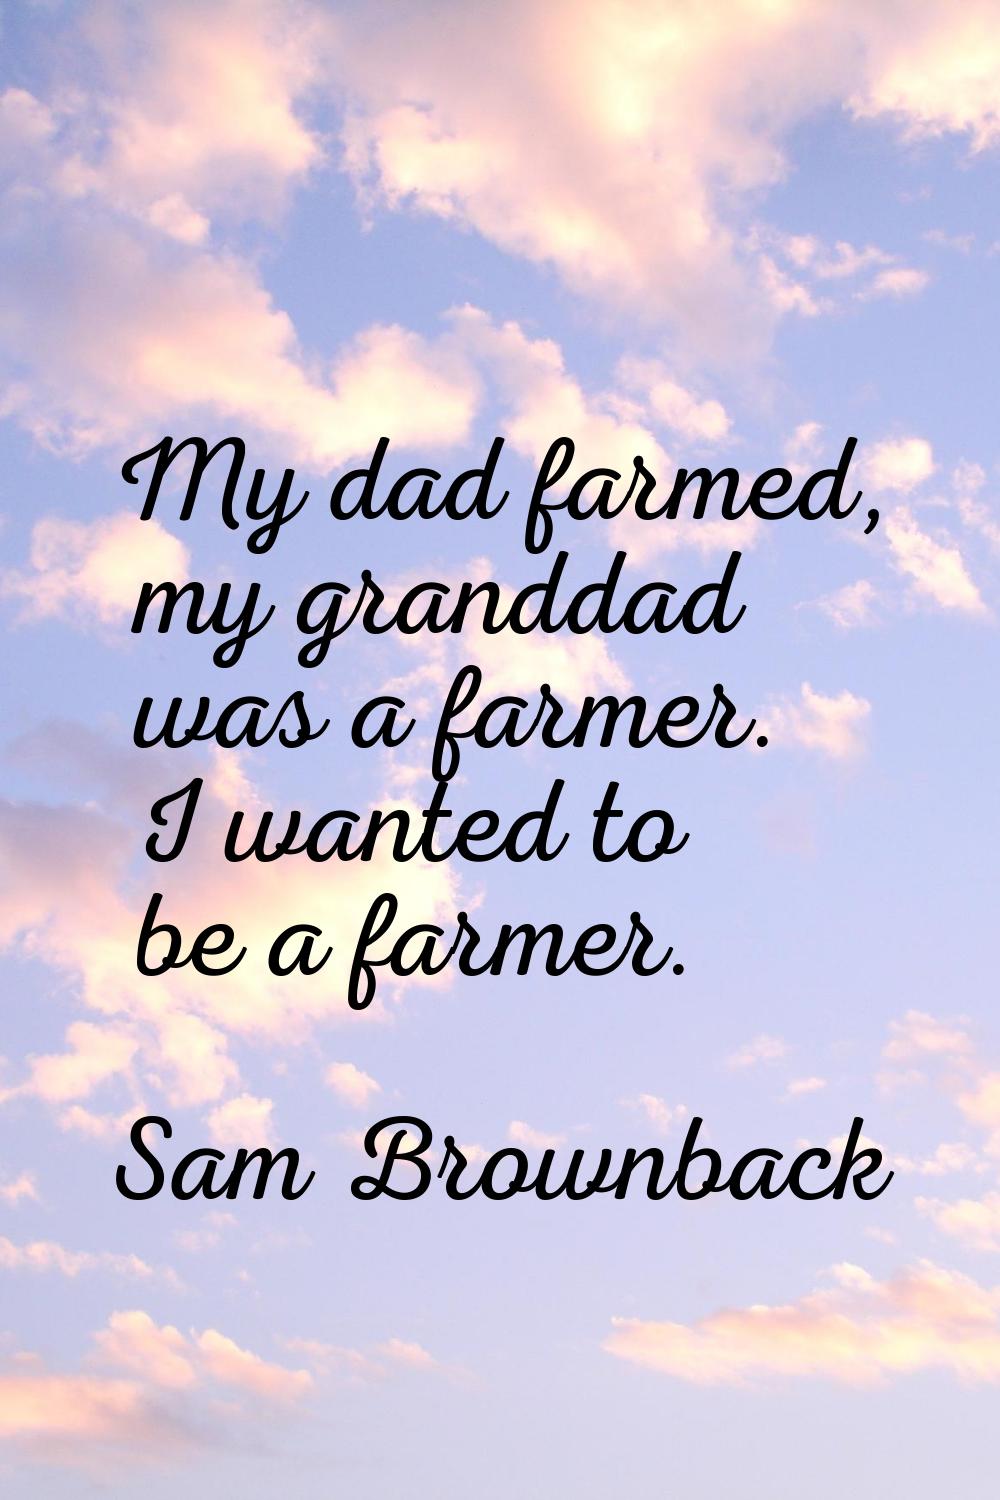 My dad farmed, my granddad was a farmer. I wanted to be a farmer.